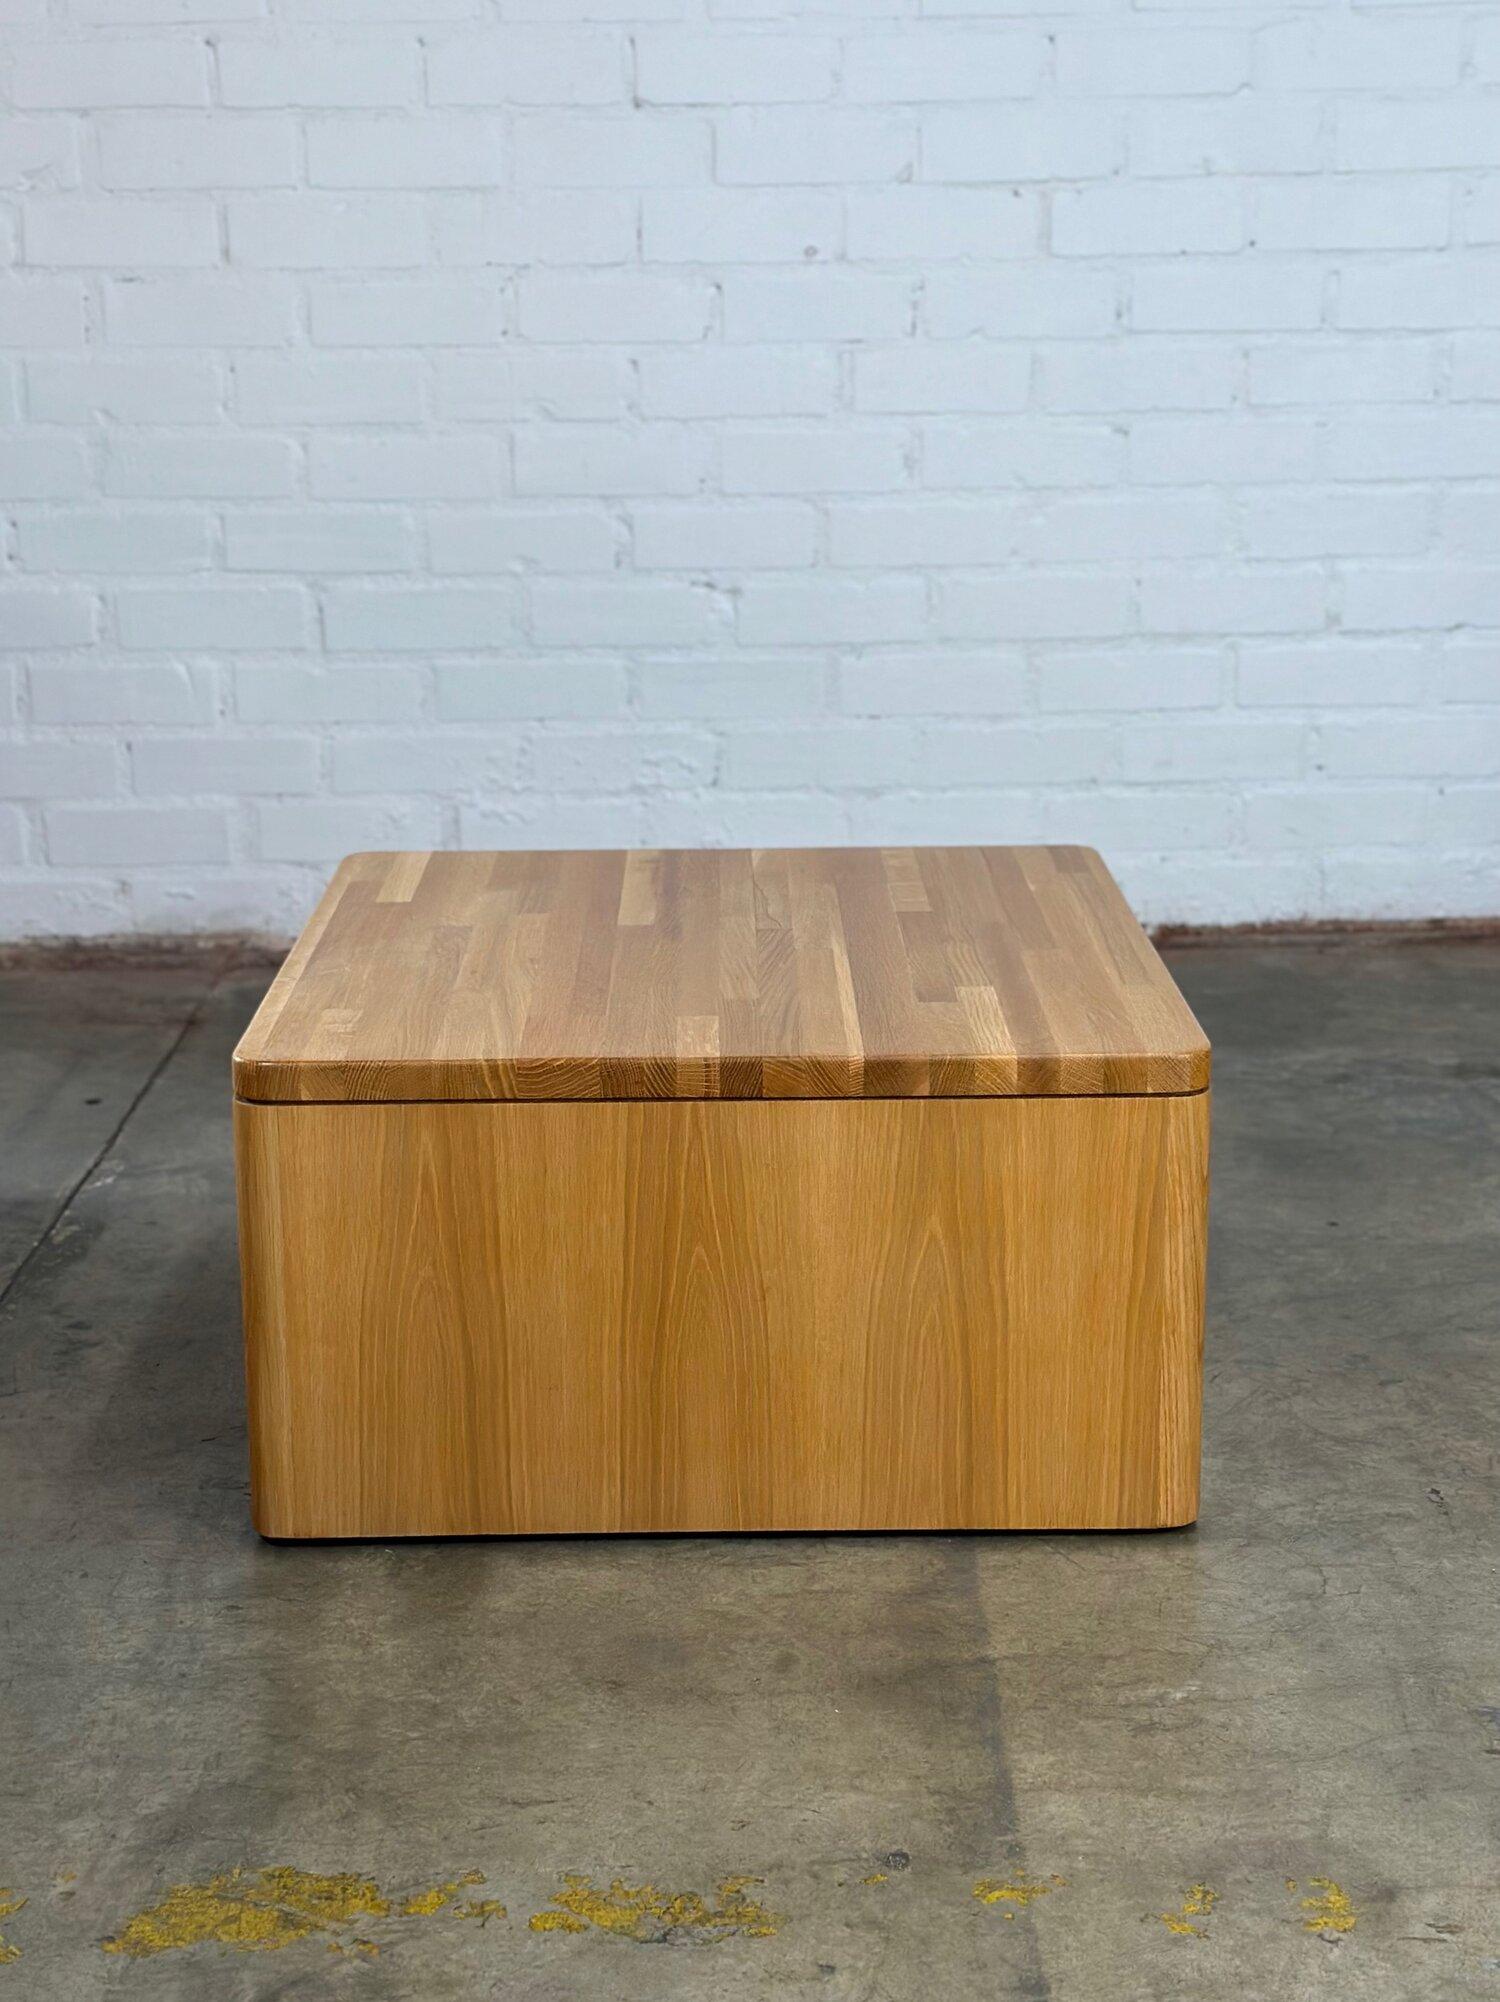 W30 D30 H16

Cette table basse vintage restaurée avec un plateau en patchwork et un grain de chêne horizontal le long du fond. Les coroners sont arrondis, avec un design minimal et une finition propre.